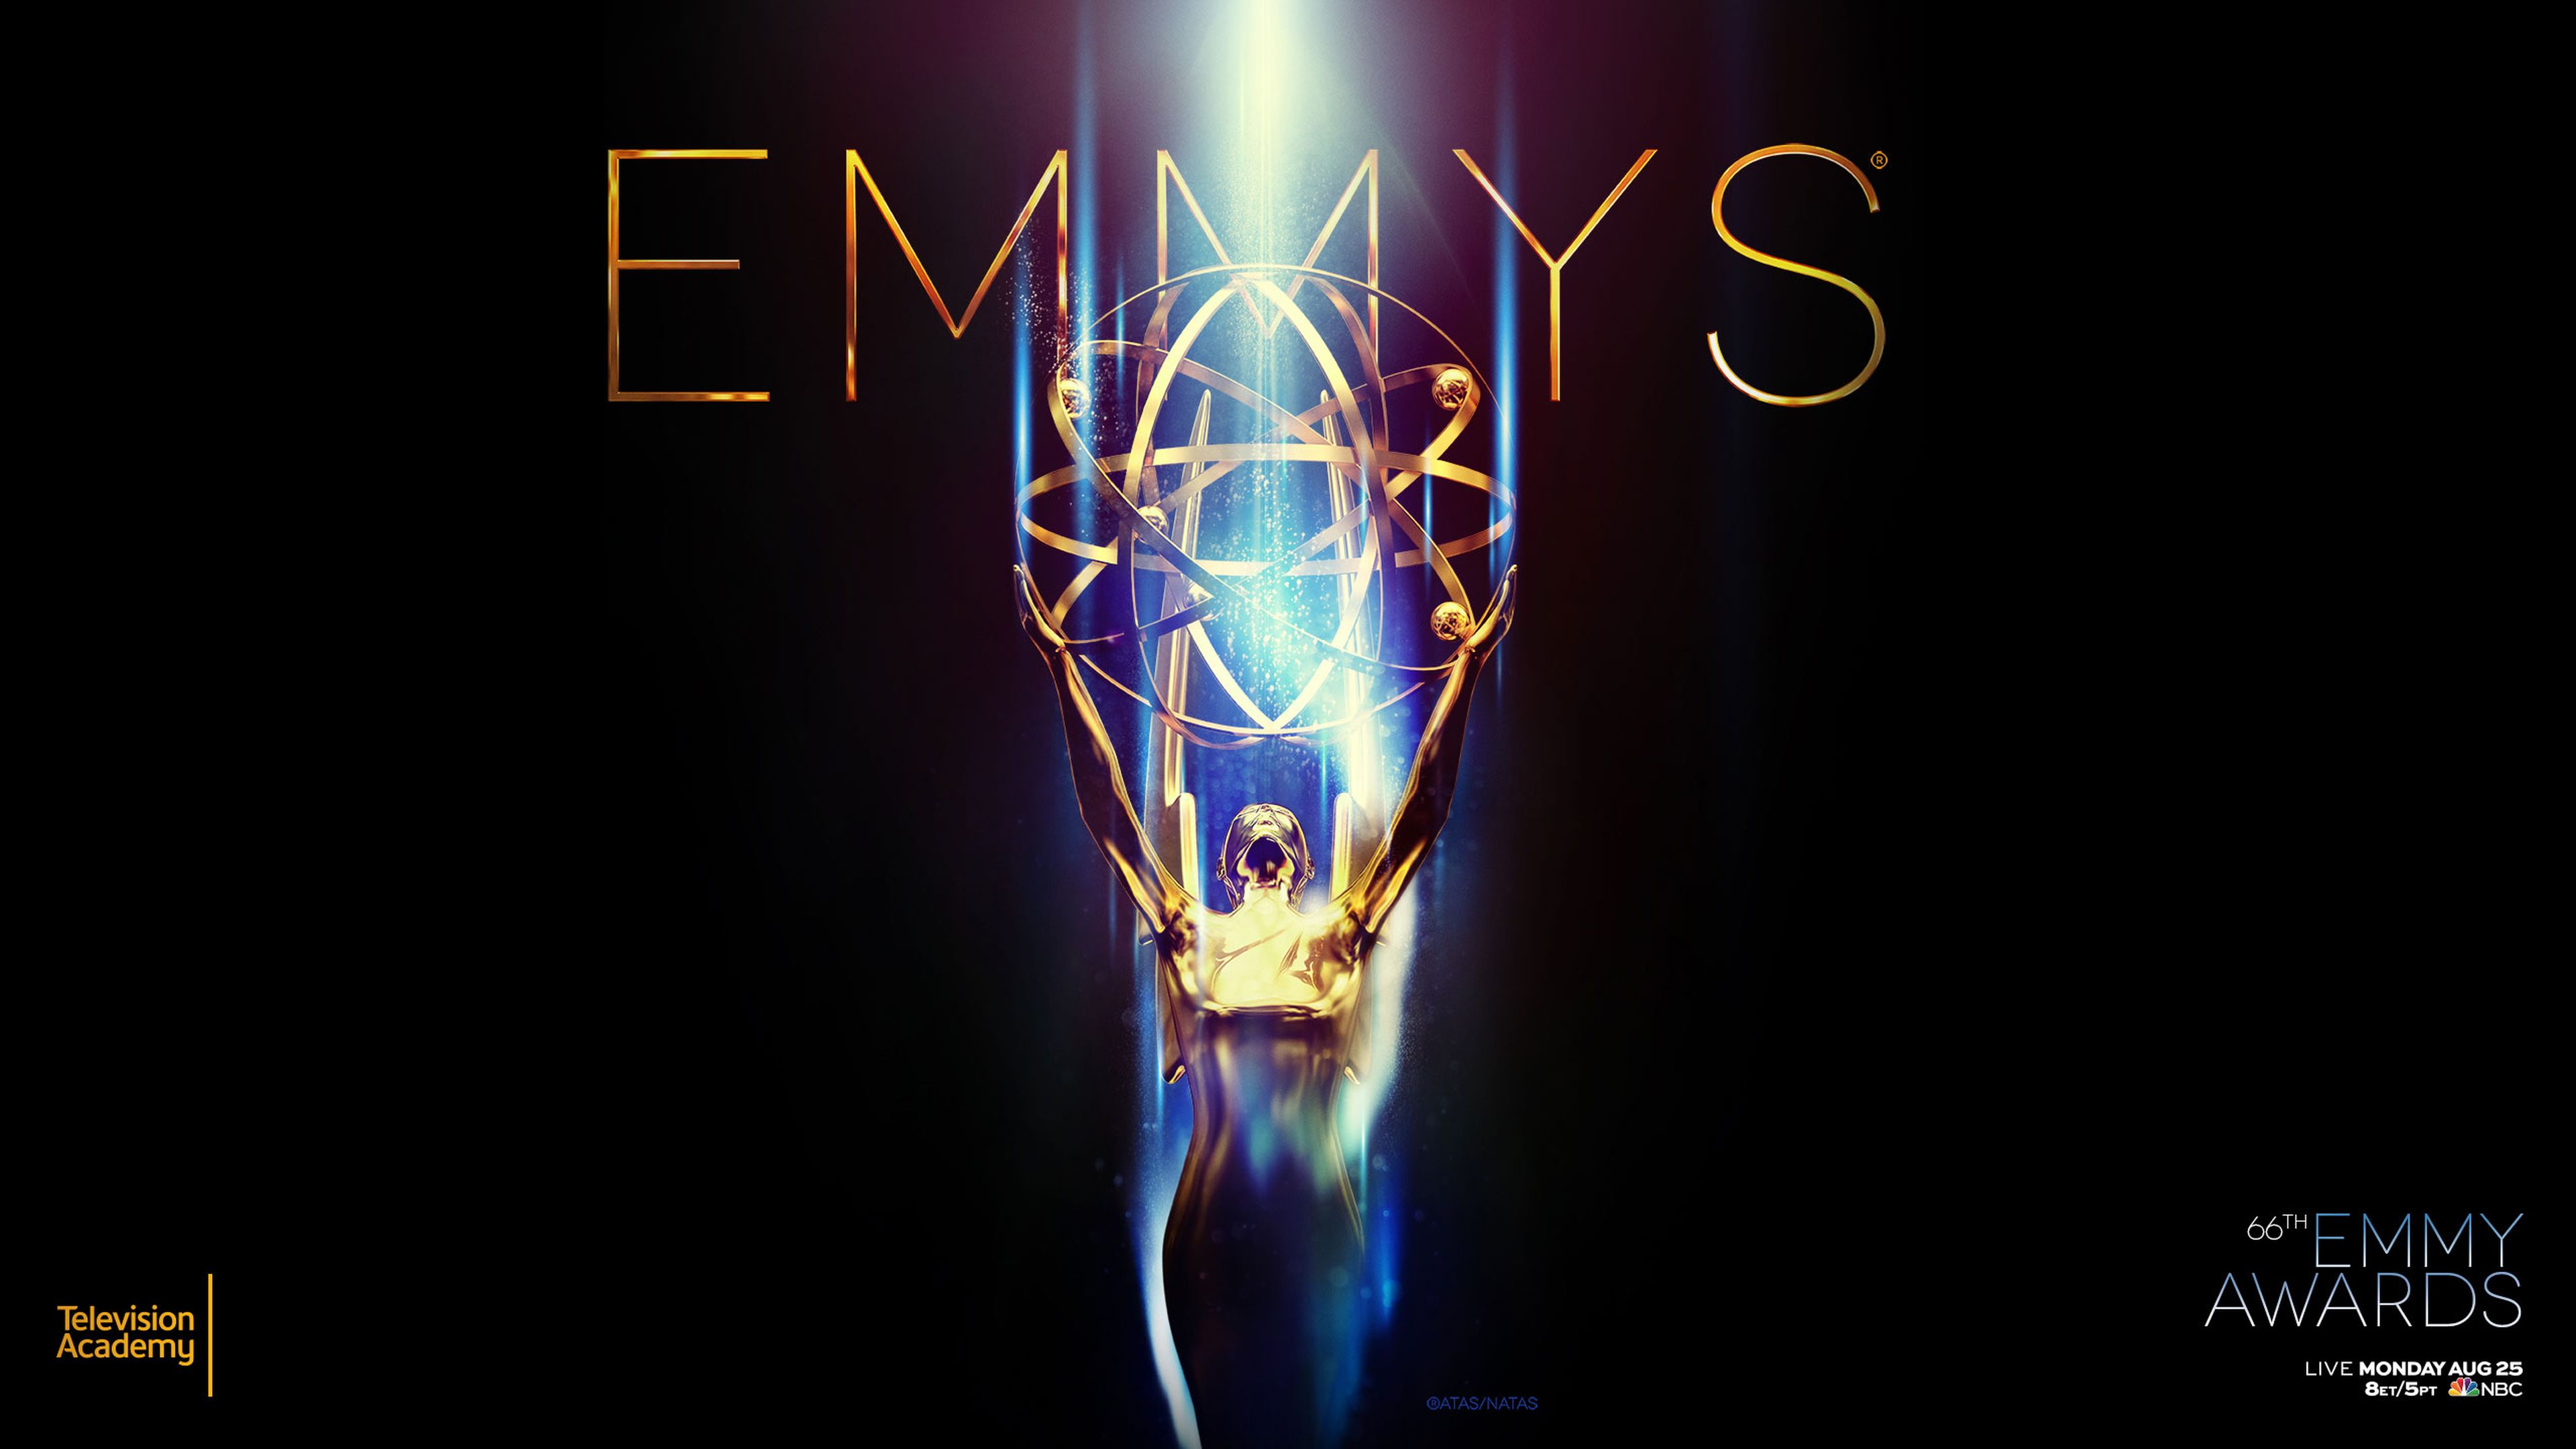 premios Emmy 2014 en directo